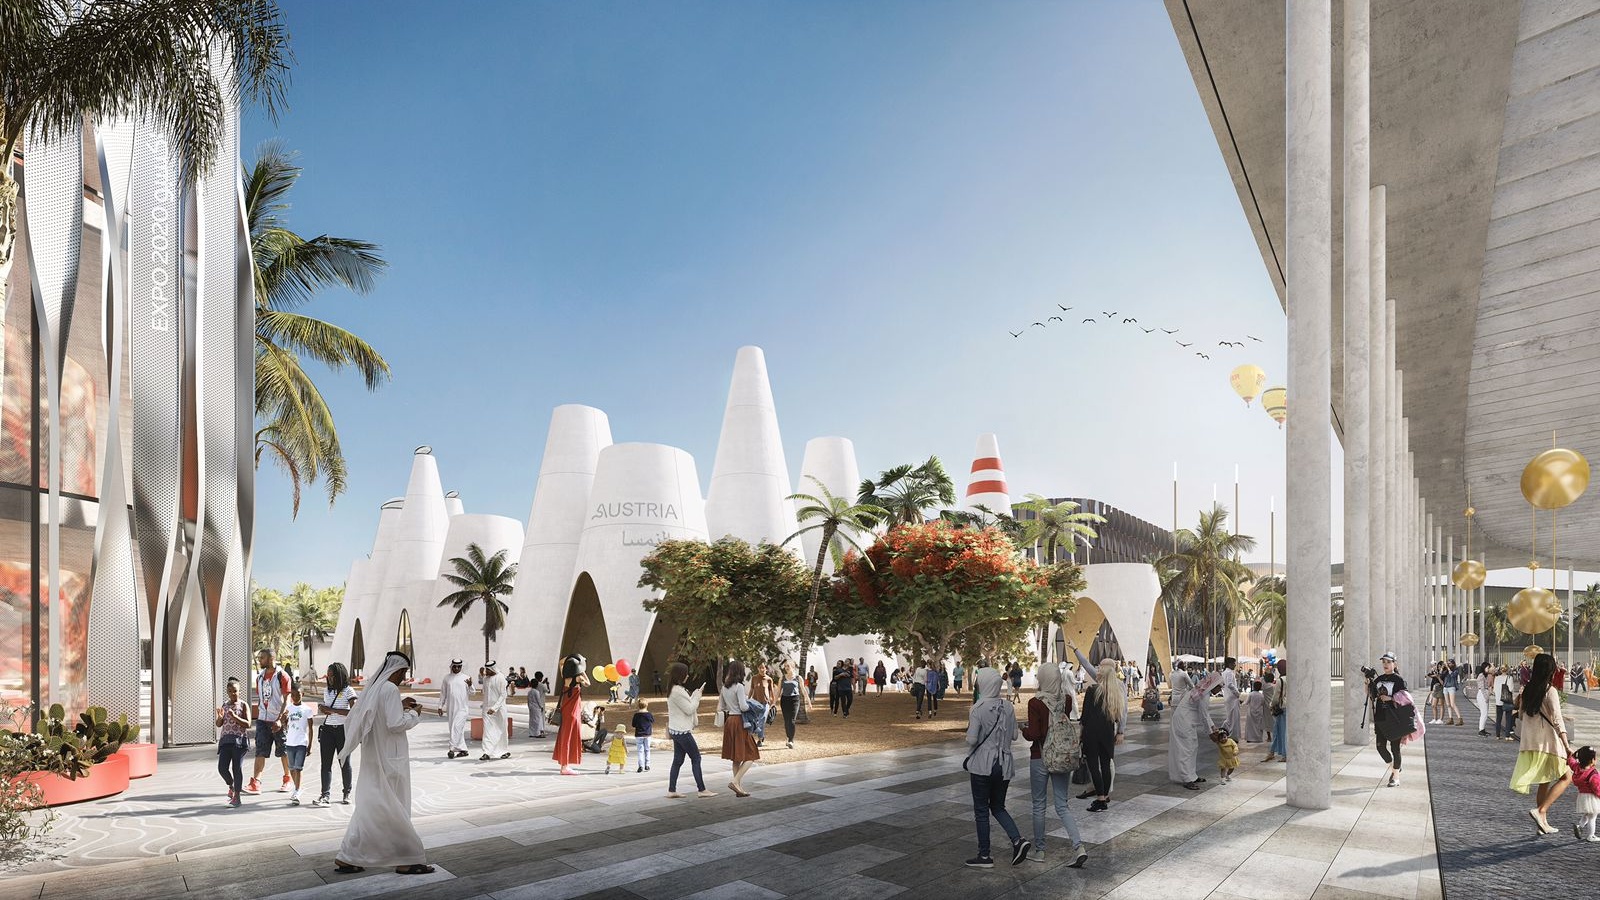 إكسبو 2020 دبي: الجناح المغربي يكشف الخطوط العريضة لبرنامجه